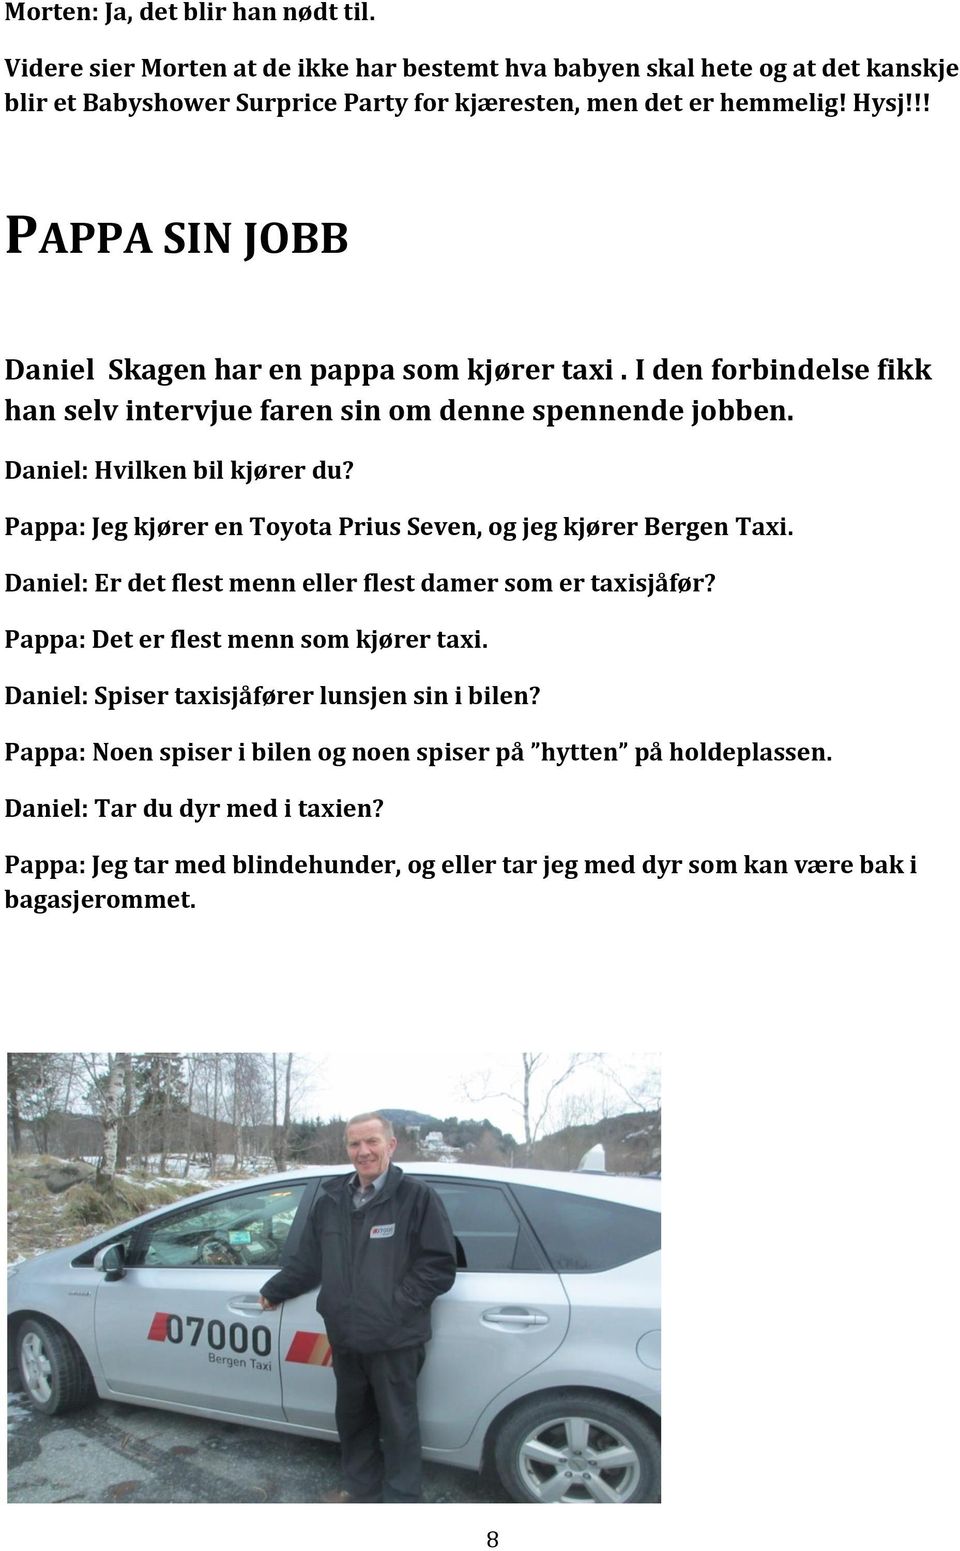 Pappa: Jeg kjører en Toyota Prius Seven, og jeg kjører Bergen Taxi. Daniel: Er det flest menn eller flest damer som er taxisjåfør? Pappa: Det er flest menn som kjører taxi.